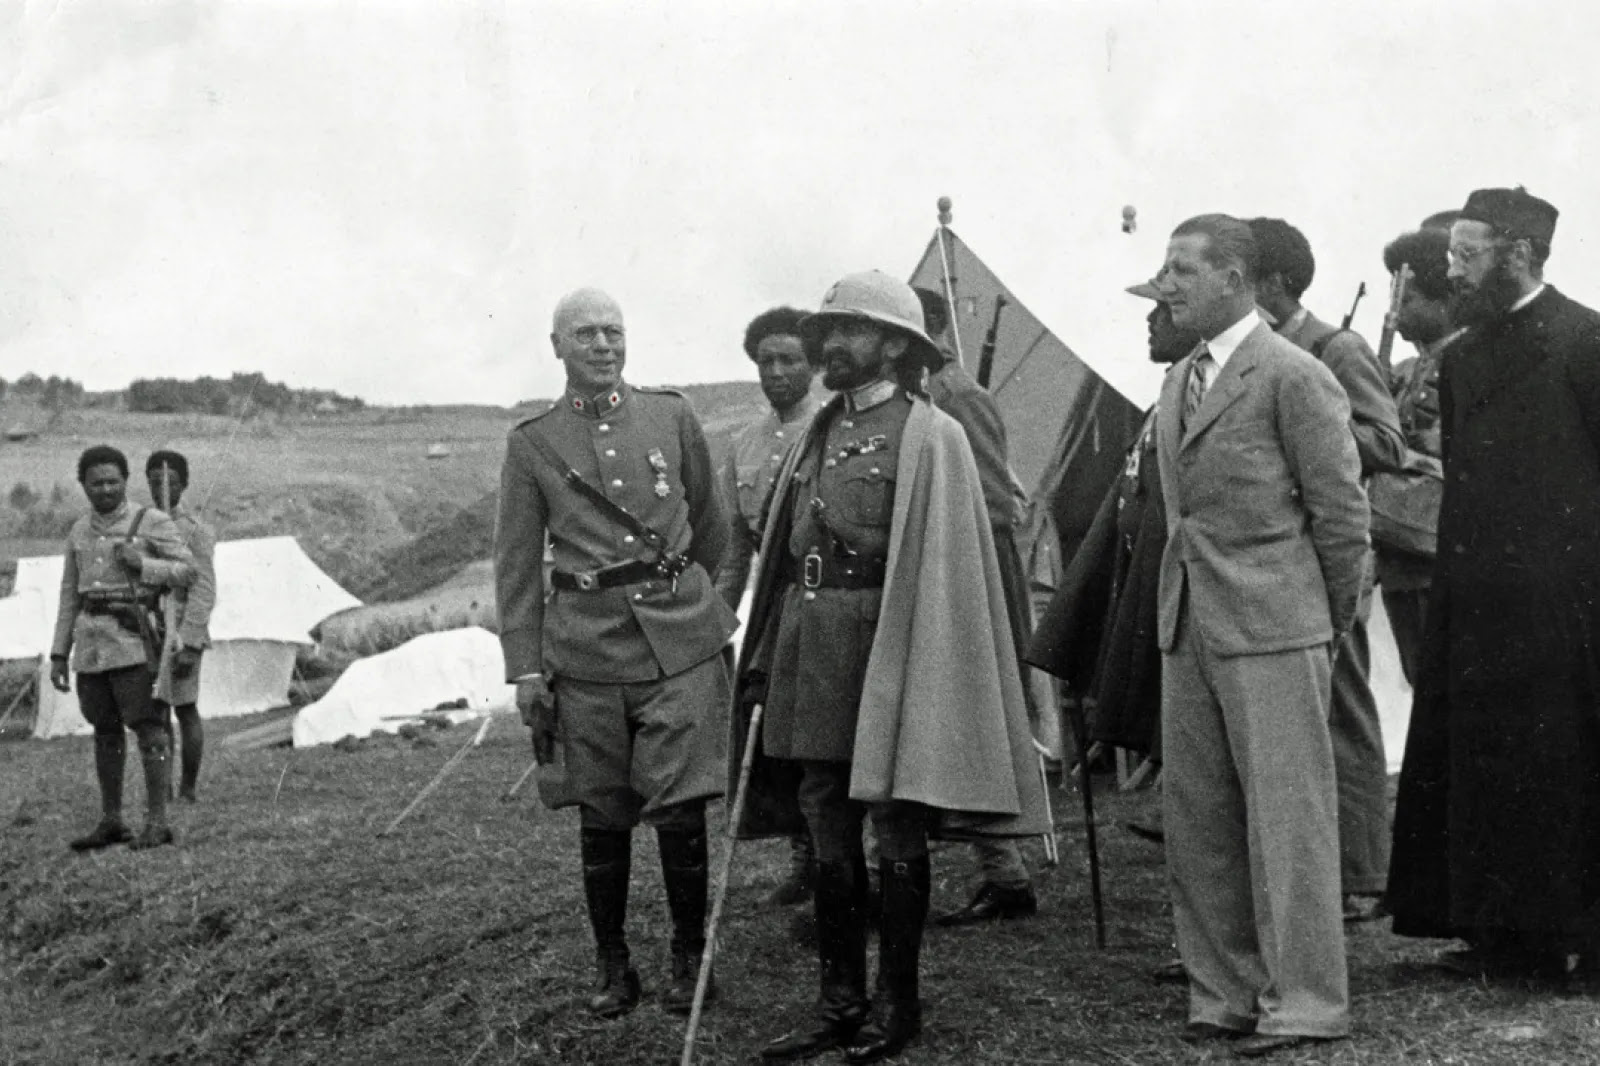 Emperor Haile Selassie in Dessie, Ethiopia, February 1936